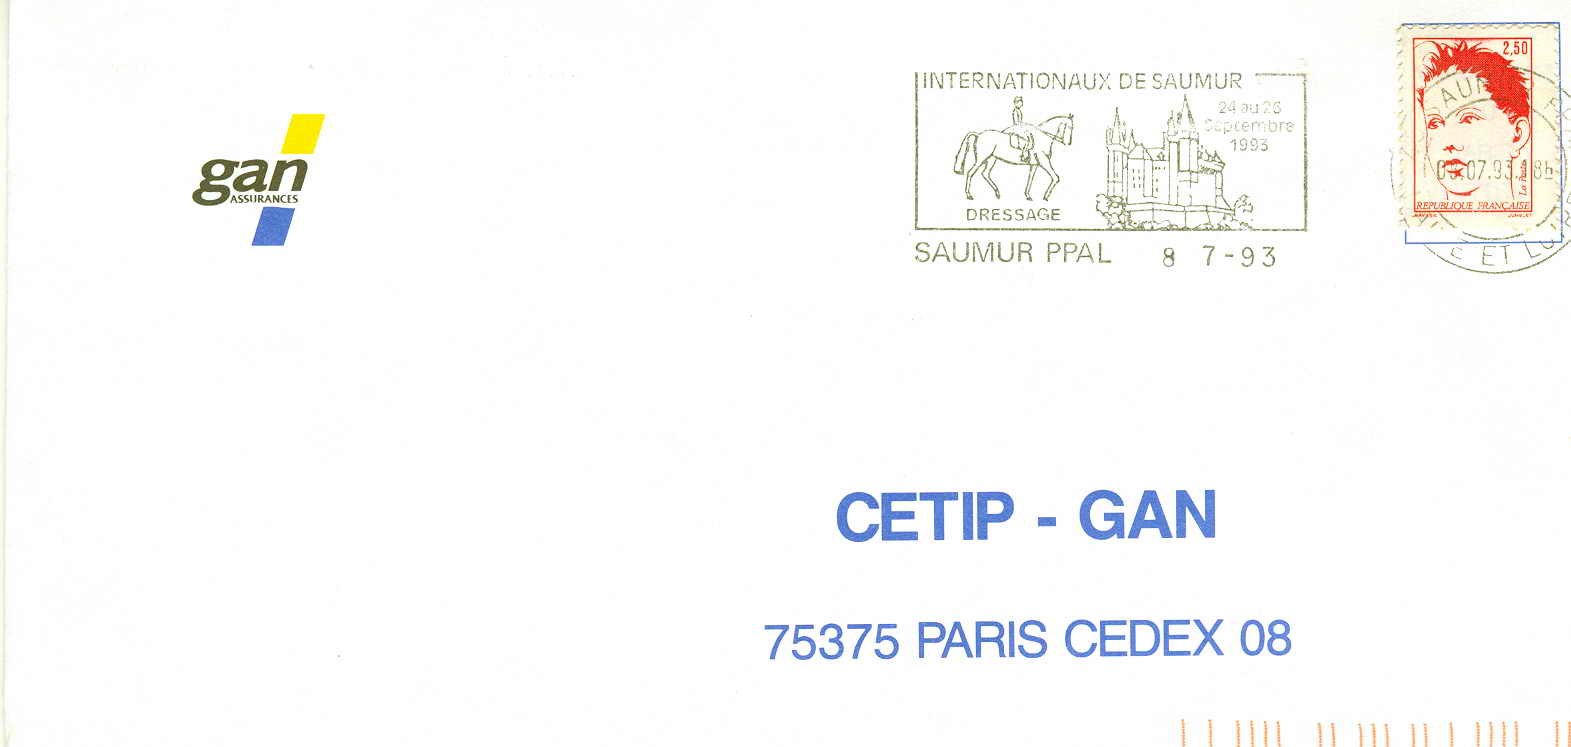 HIPPISME OBLITERATION TEMPORAIRE FRANCE SAUMUR 1993 INTERNATIONAUS DE SAUMUR - Hippisme